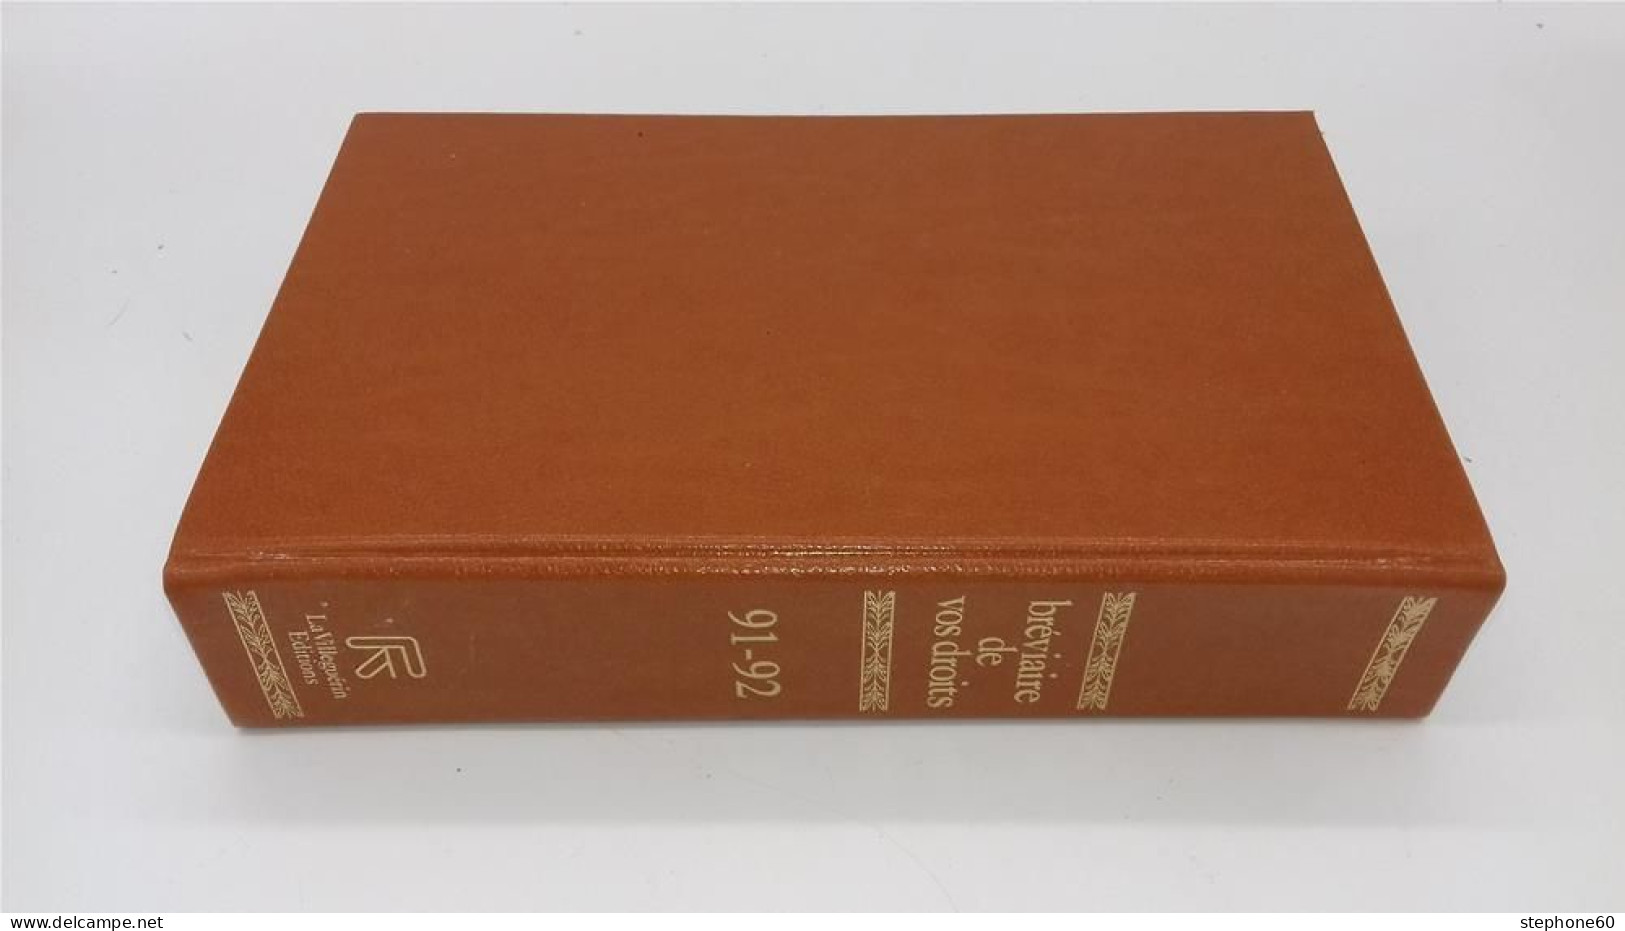 998 - (115) Breviaire De Vos Droits - Edition 1991 - 1992 - La Villeguerin Editions - Droit